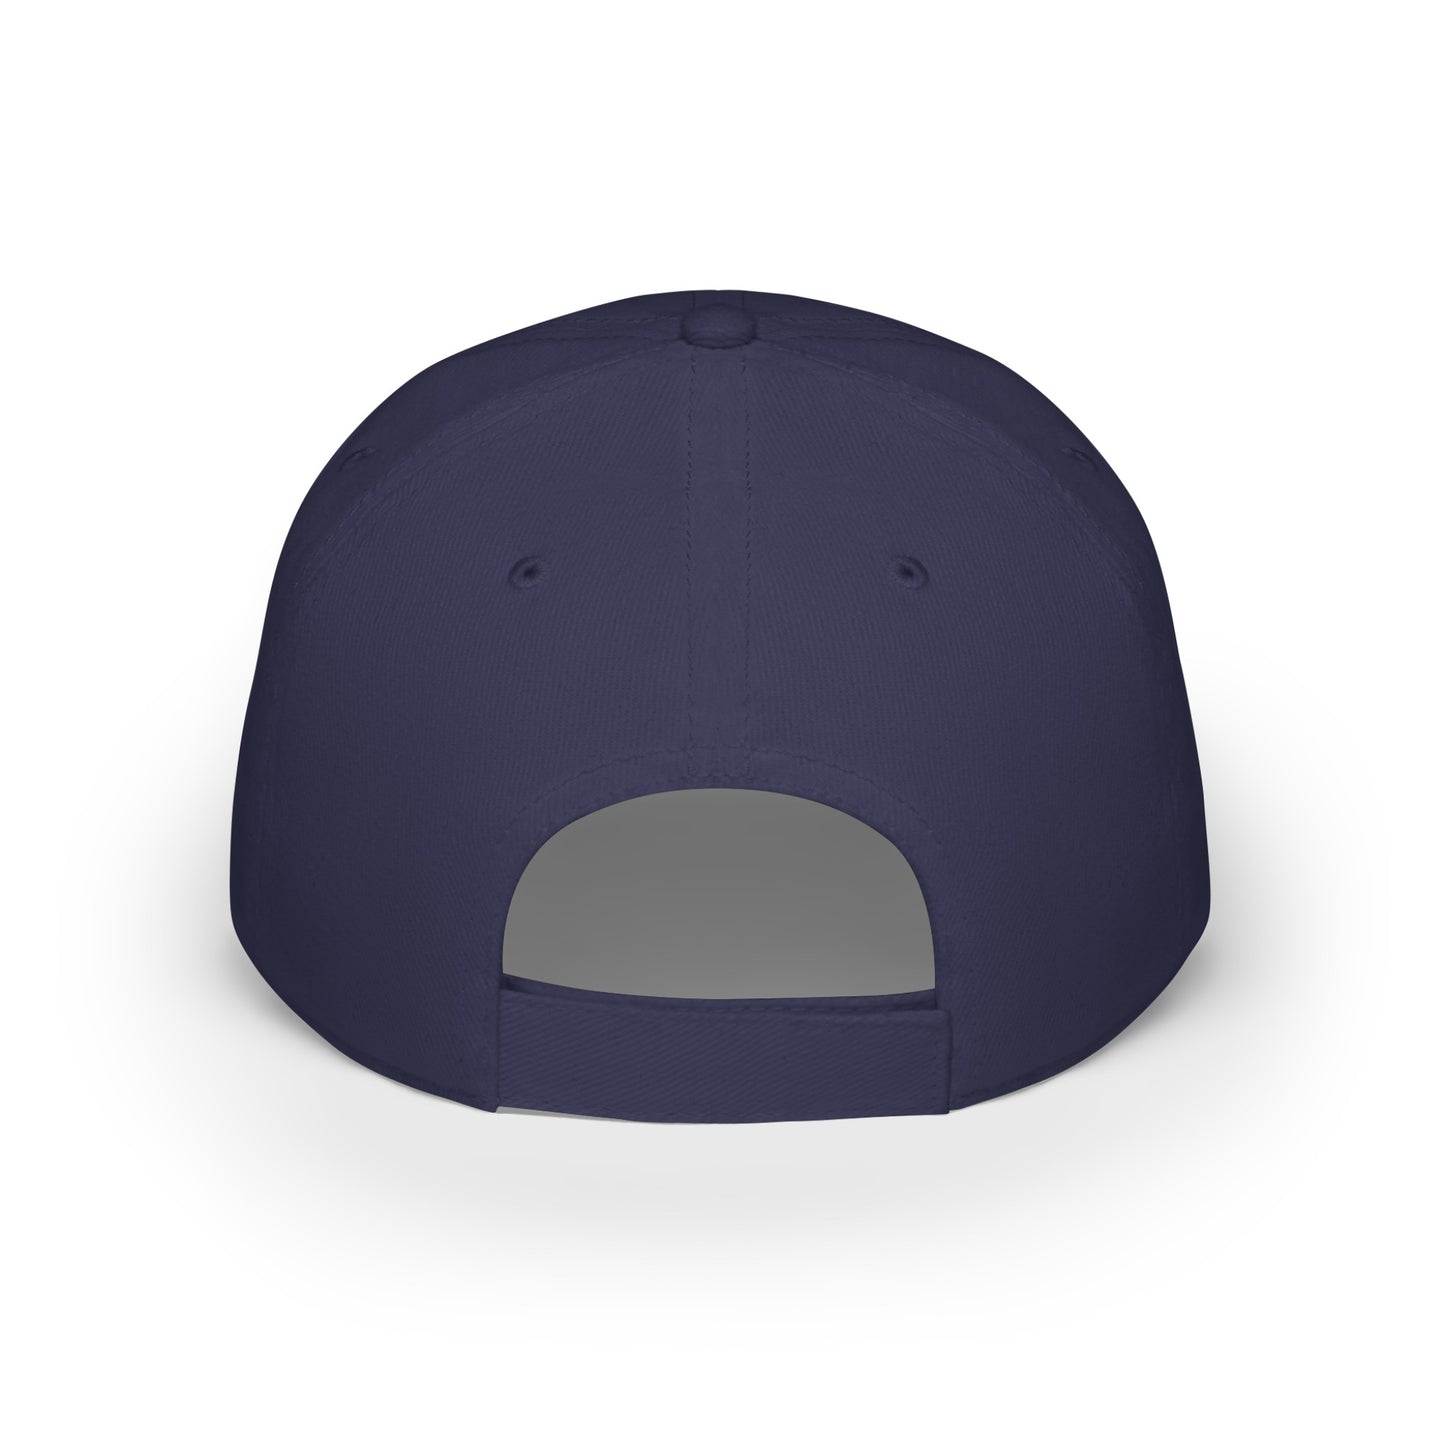 MDBTDJ#WBLUWGC - Low Profile Baseball Cap Tattooed Dj's Limited Edition, Hats, Tattooed Djs Shop